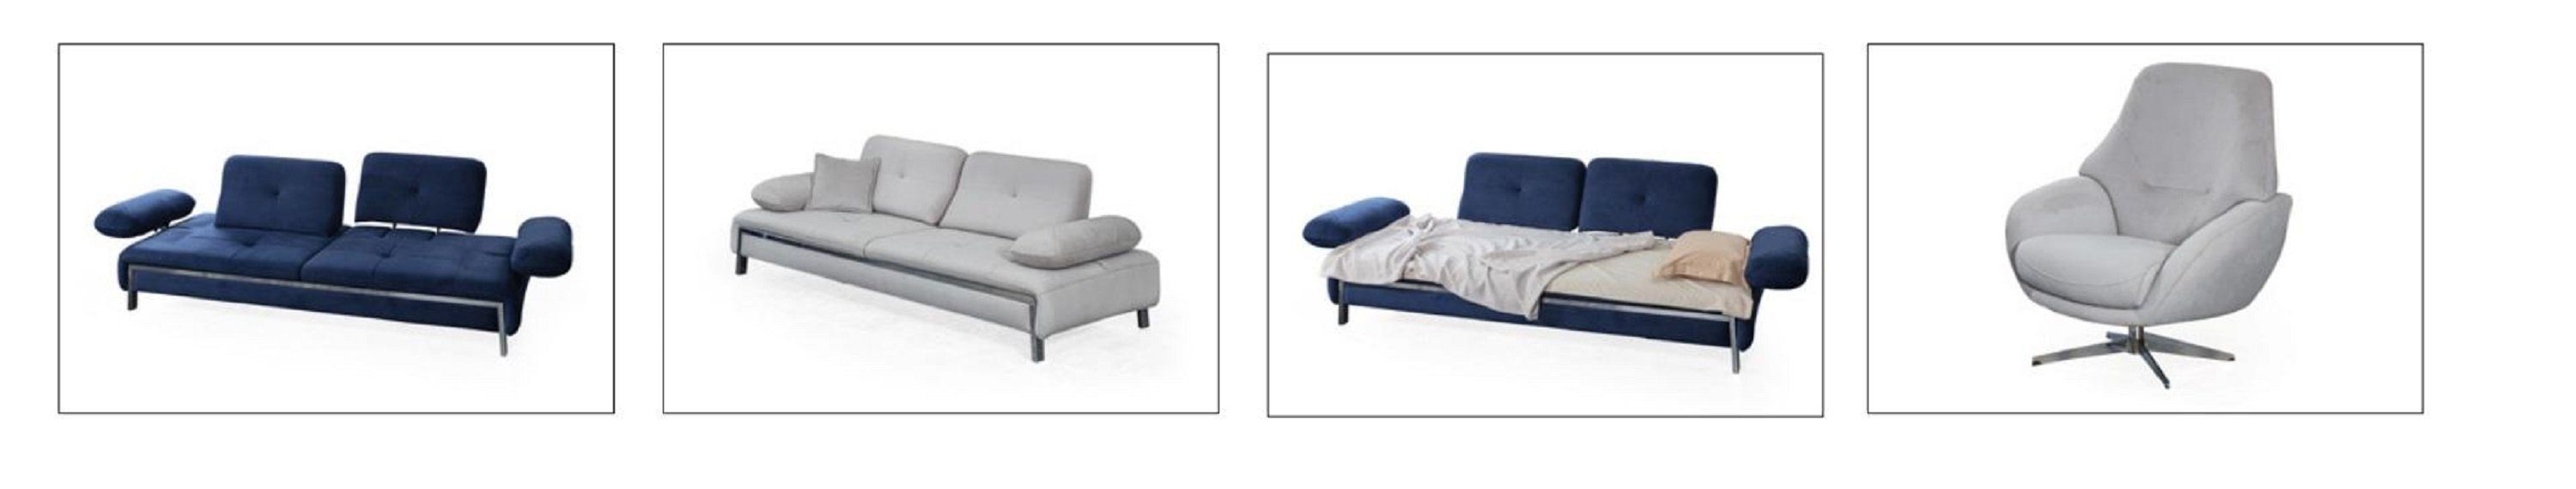 Möbel 3+1+1 JVmoebel Modern Sofa Sitzer Couch Garnitur Stoffsofa Sofagarnituren